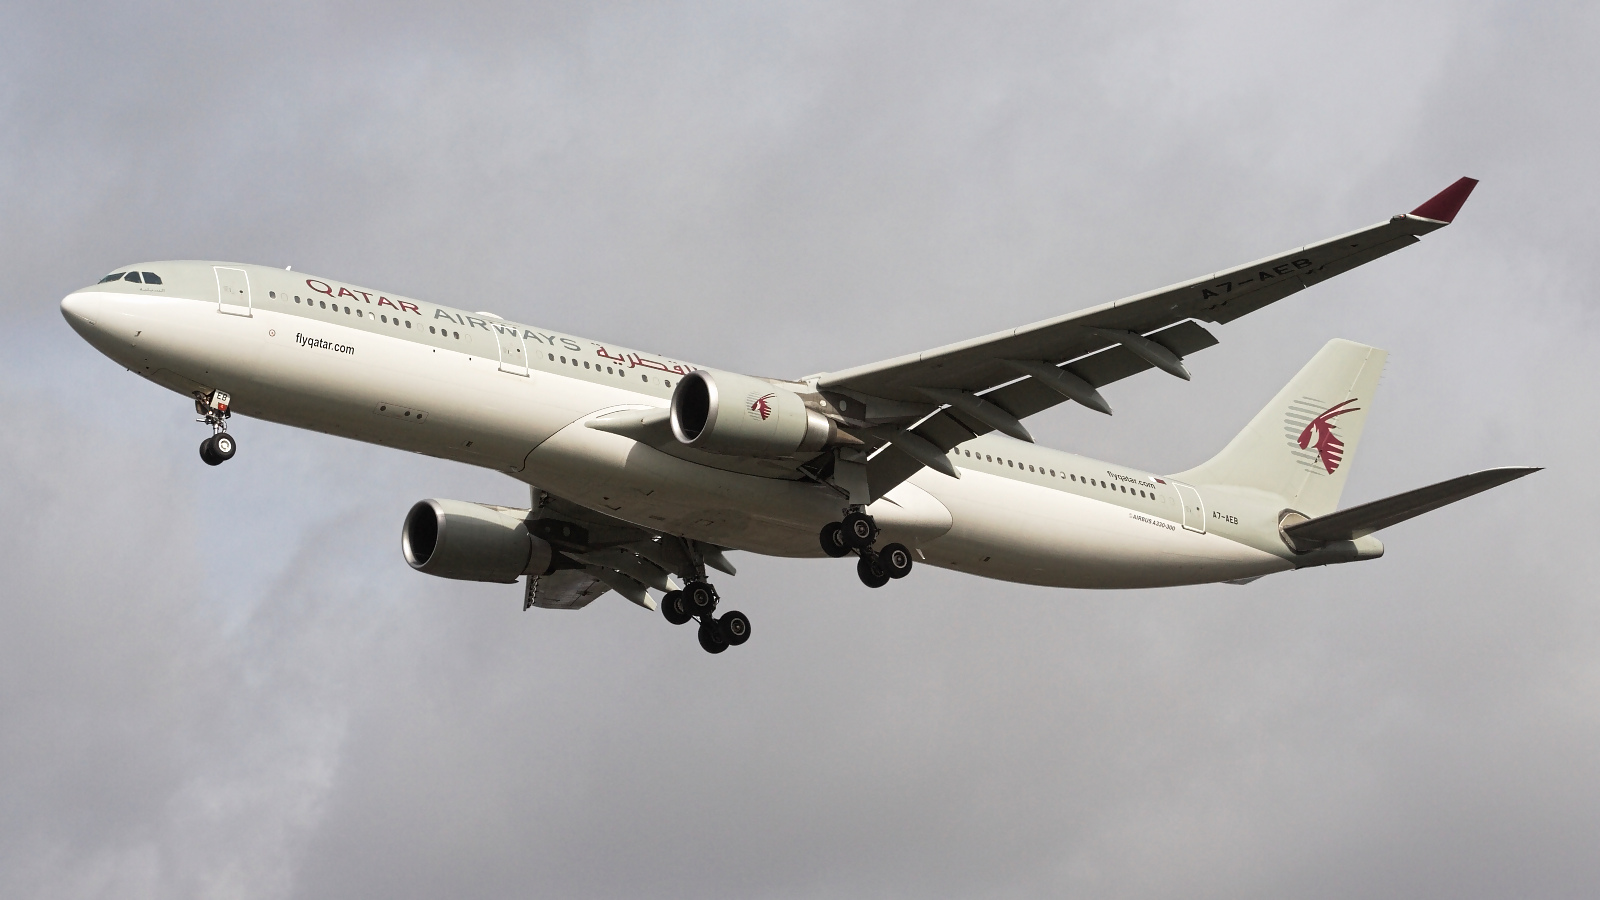 A7-AEB ✈ Qatar Airways Airbus A330-302 @ London-Heathrow